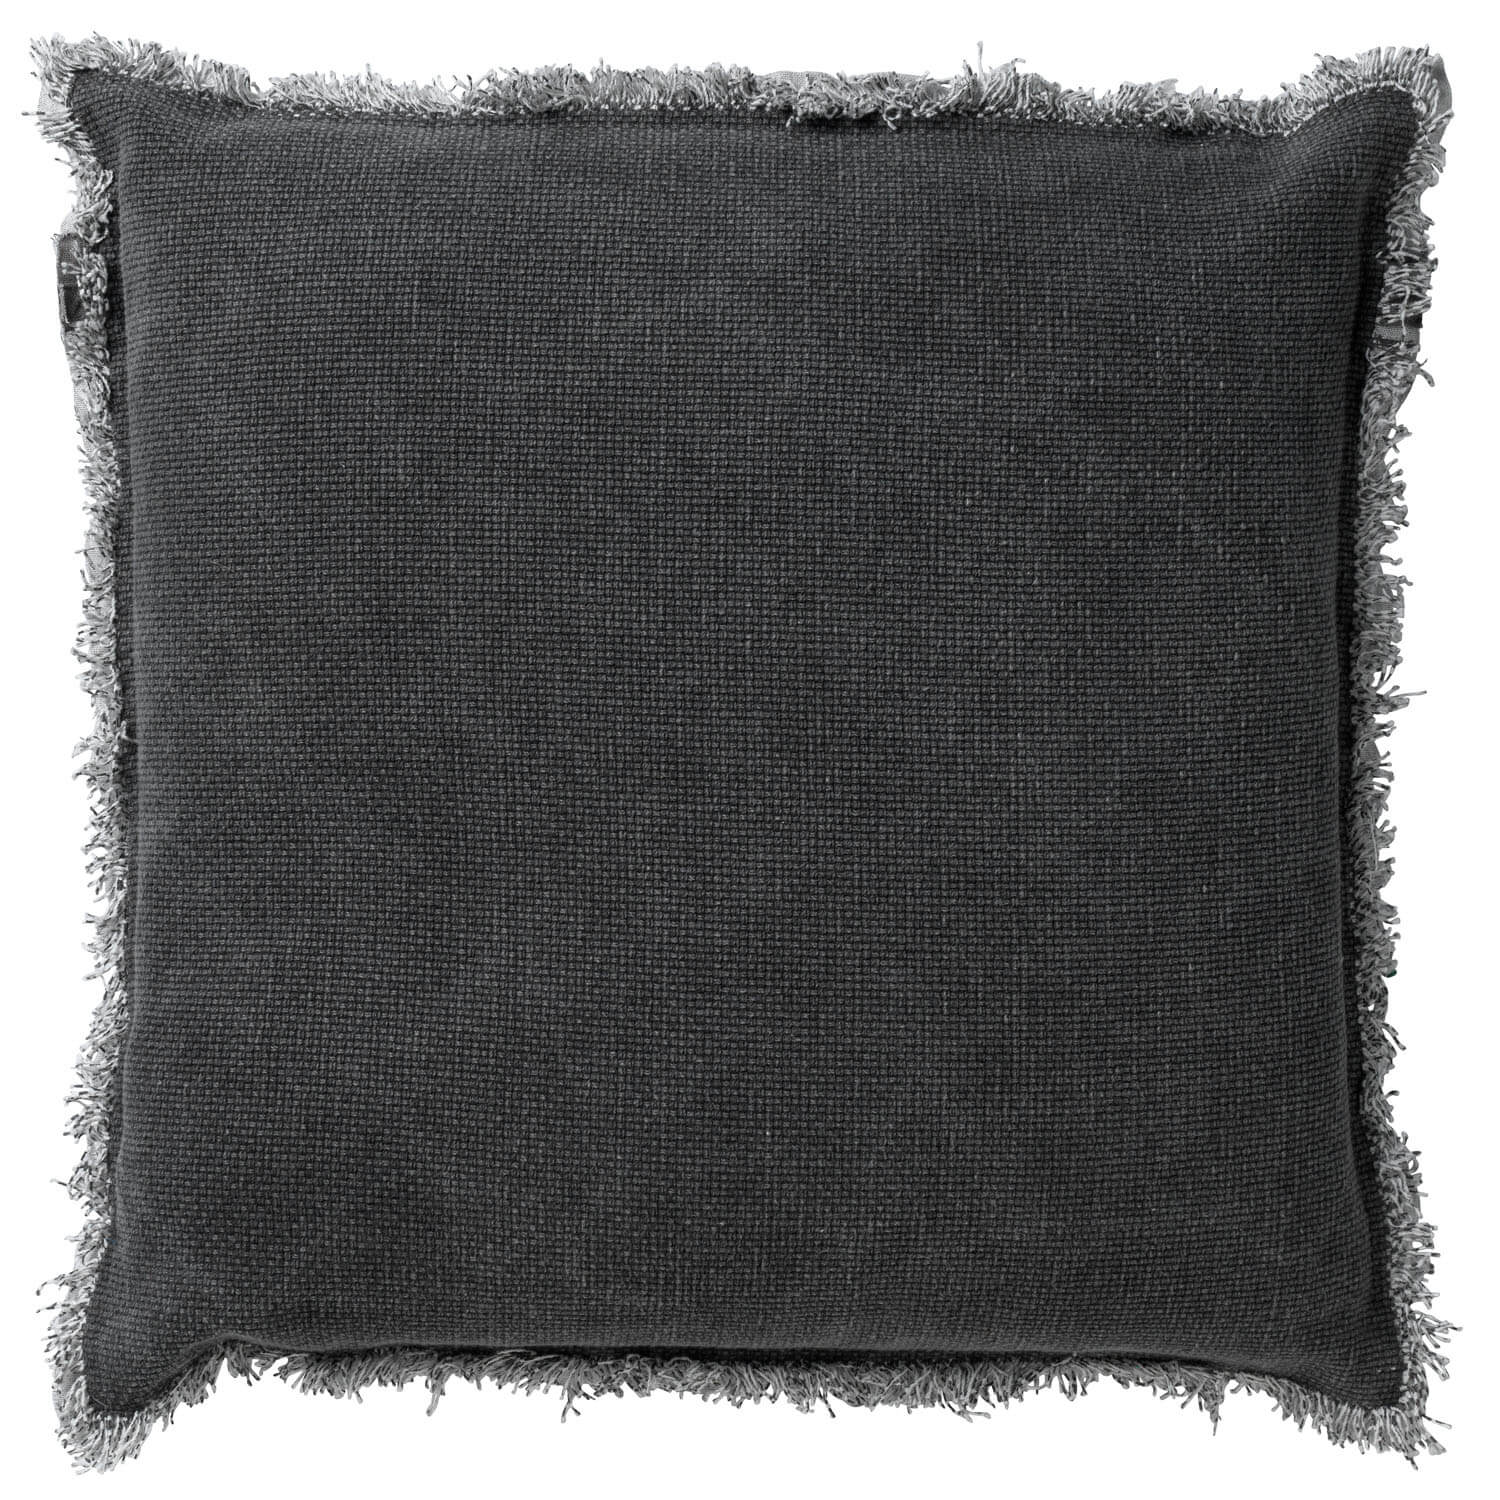 BURTO - Sierkussen 60x60 cm - gewassen katoen - Charcoal Gray - antraciet